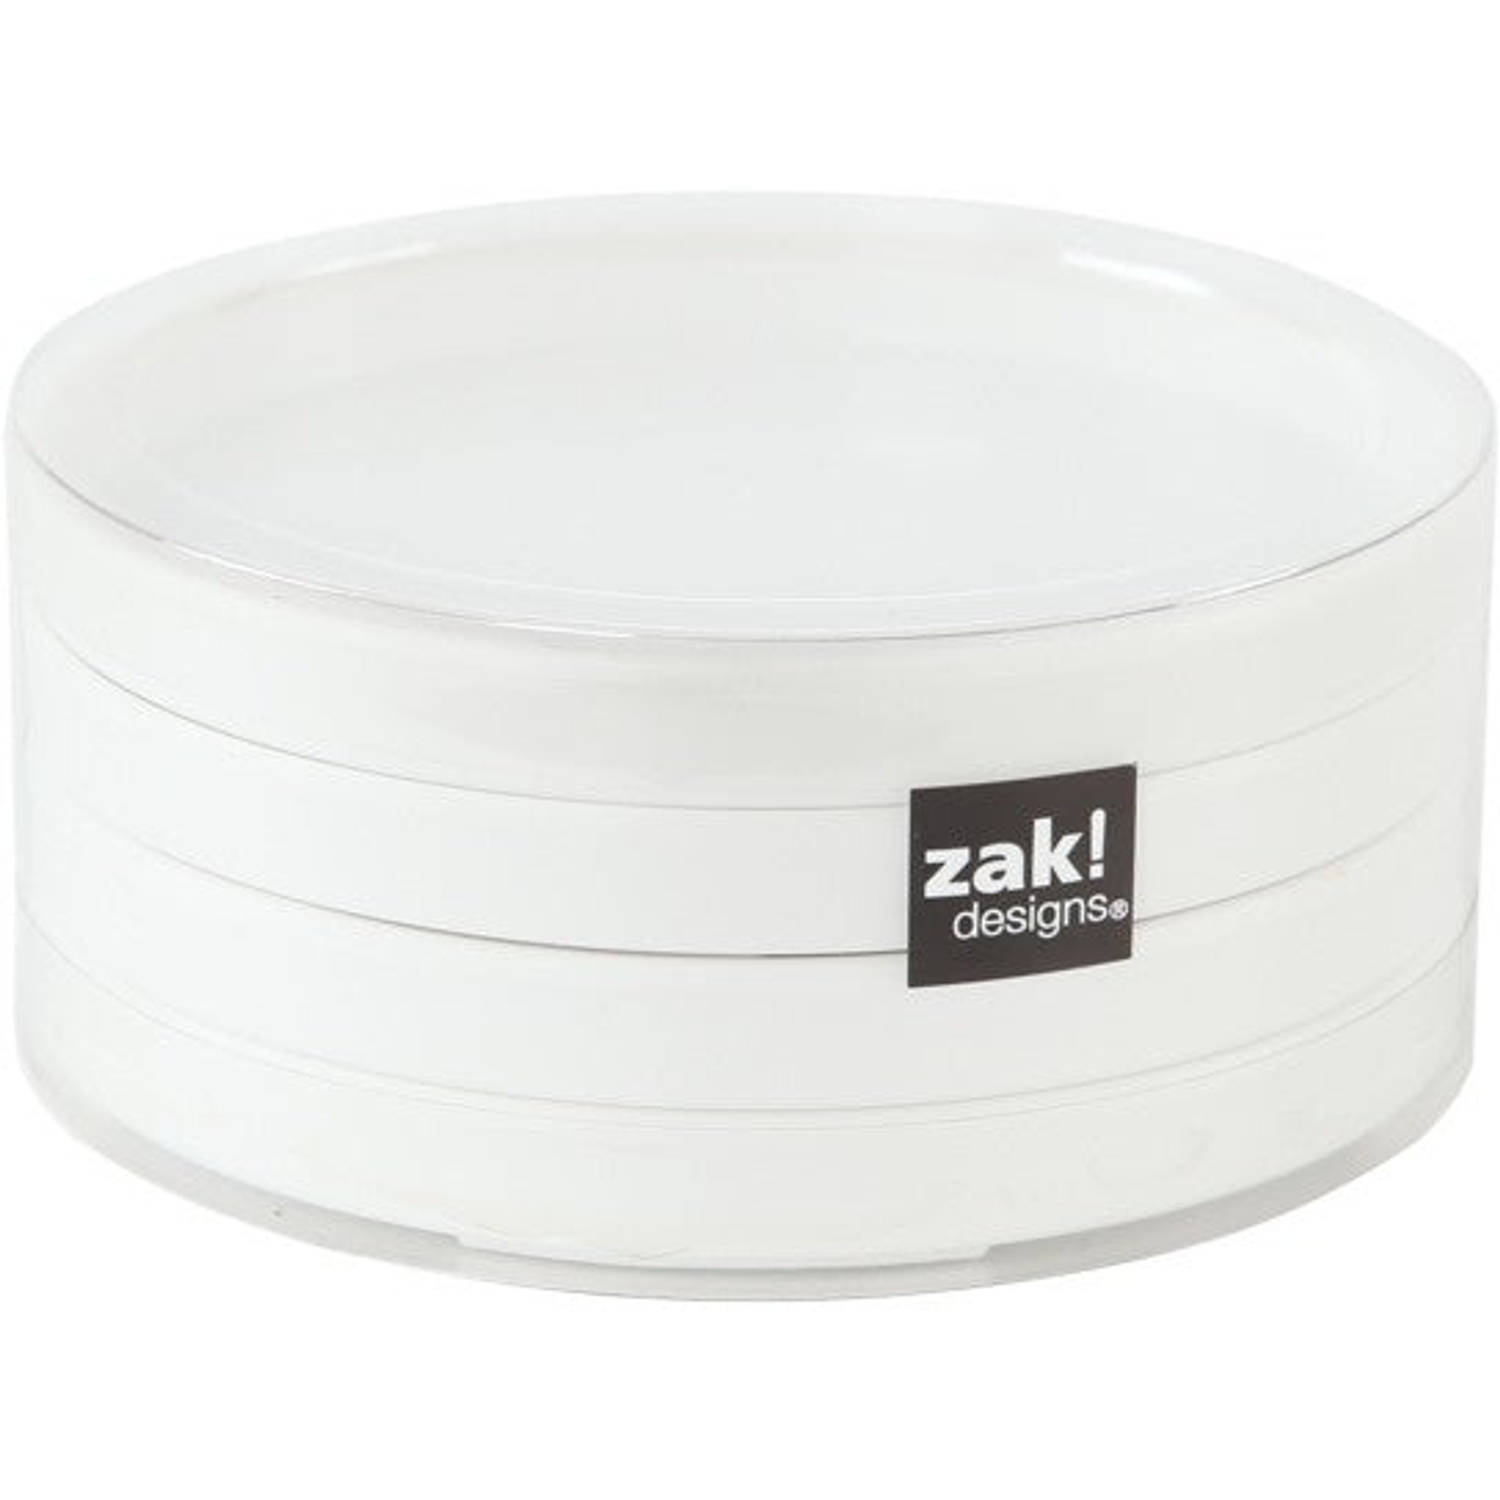 Zak!Designs Onderzetter - Voor Glas - Wit - Set van 4 stuks